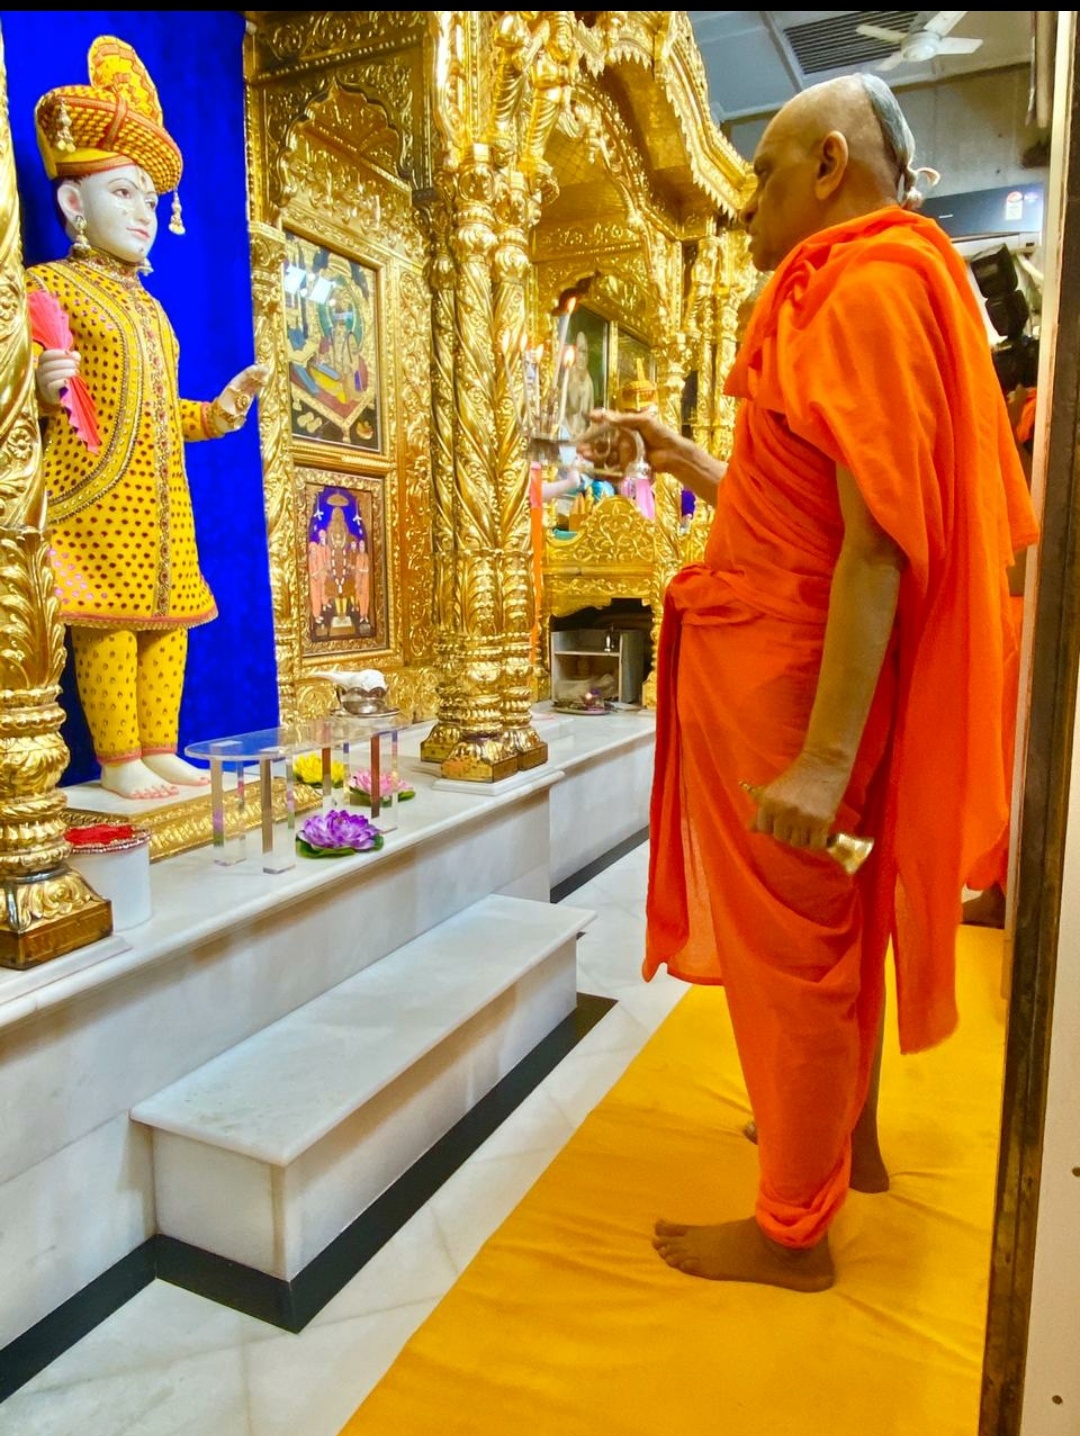 Shri Ghanshyam Mahaprabhu